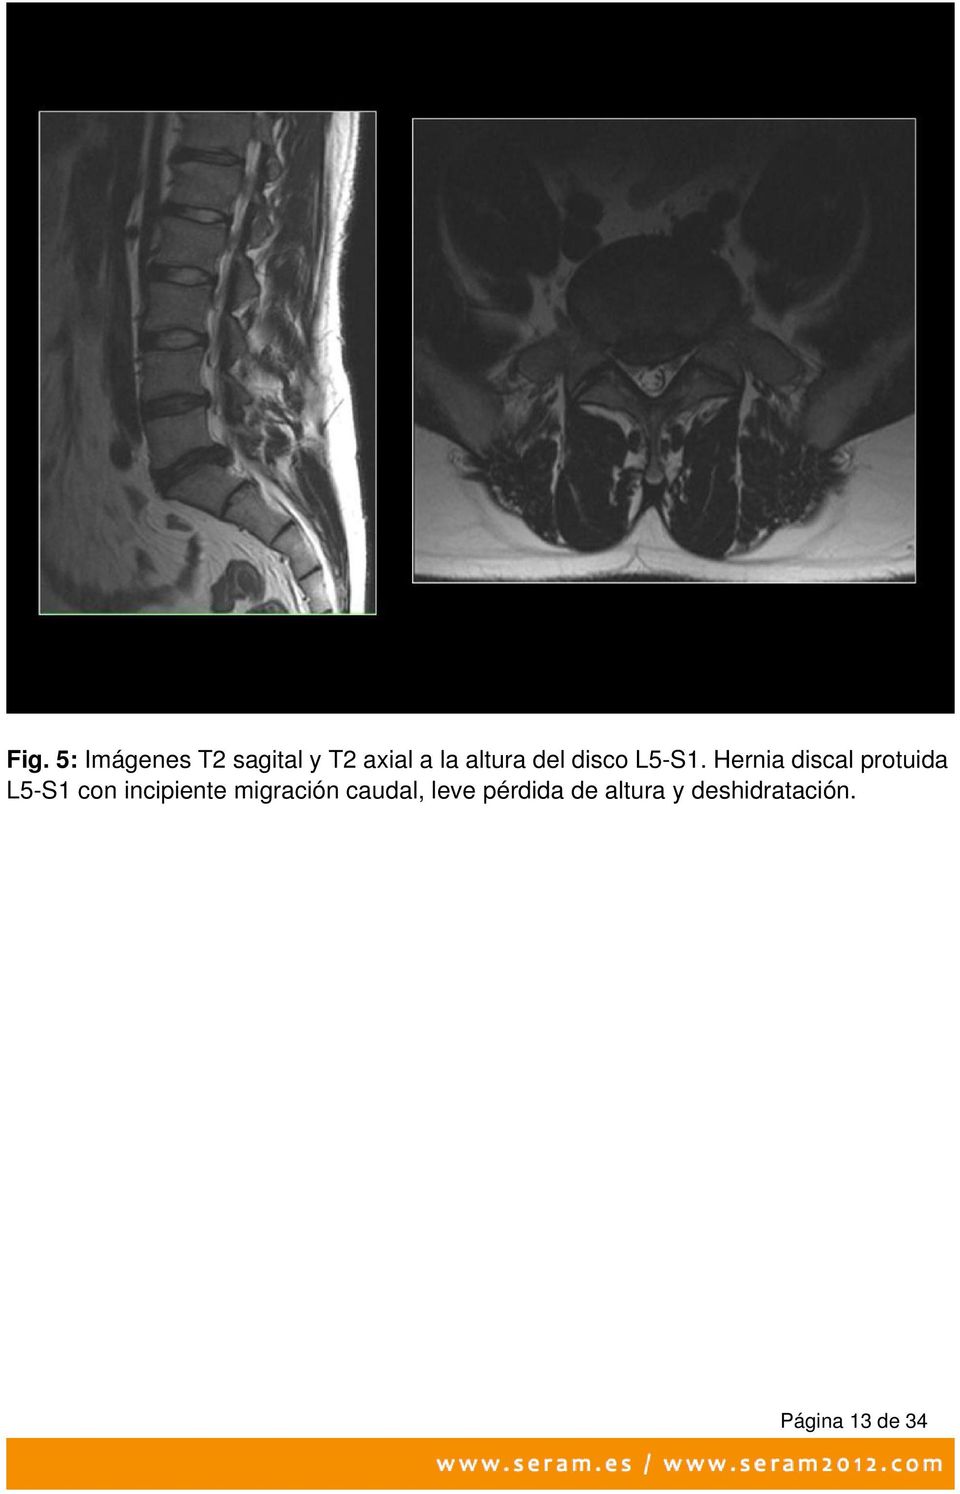 Hernia discal protuida L5-S1 con incipiente